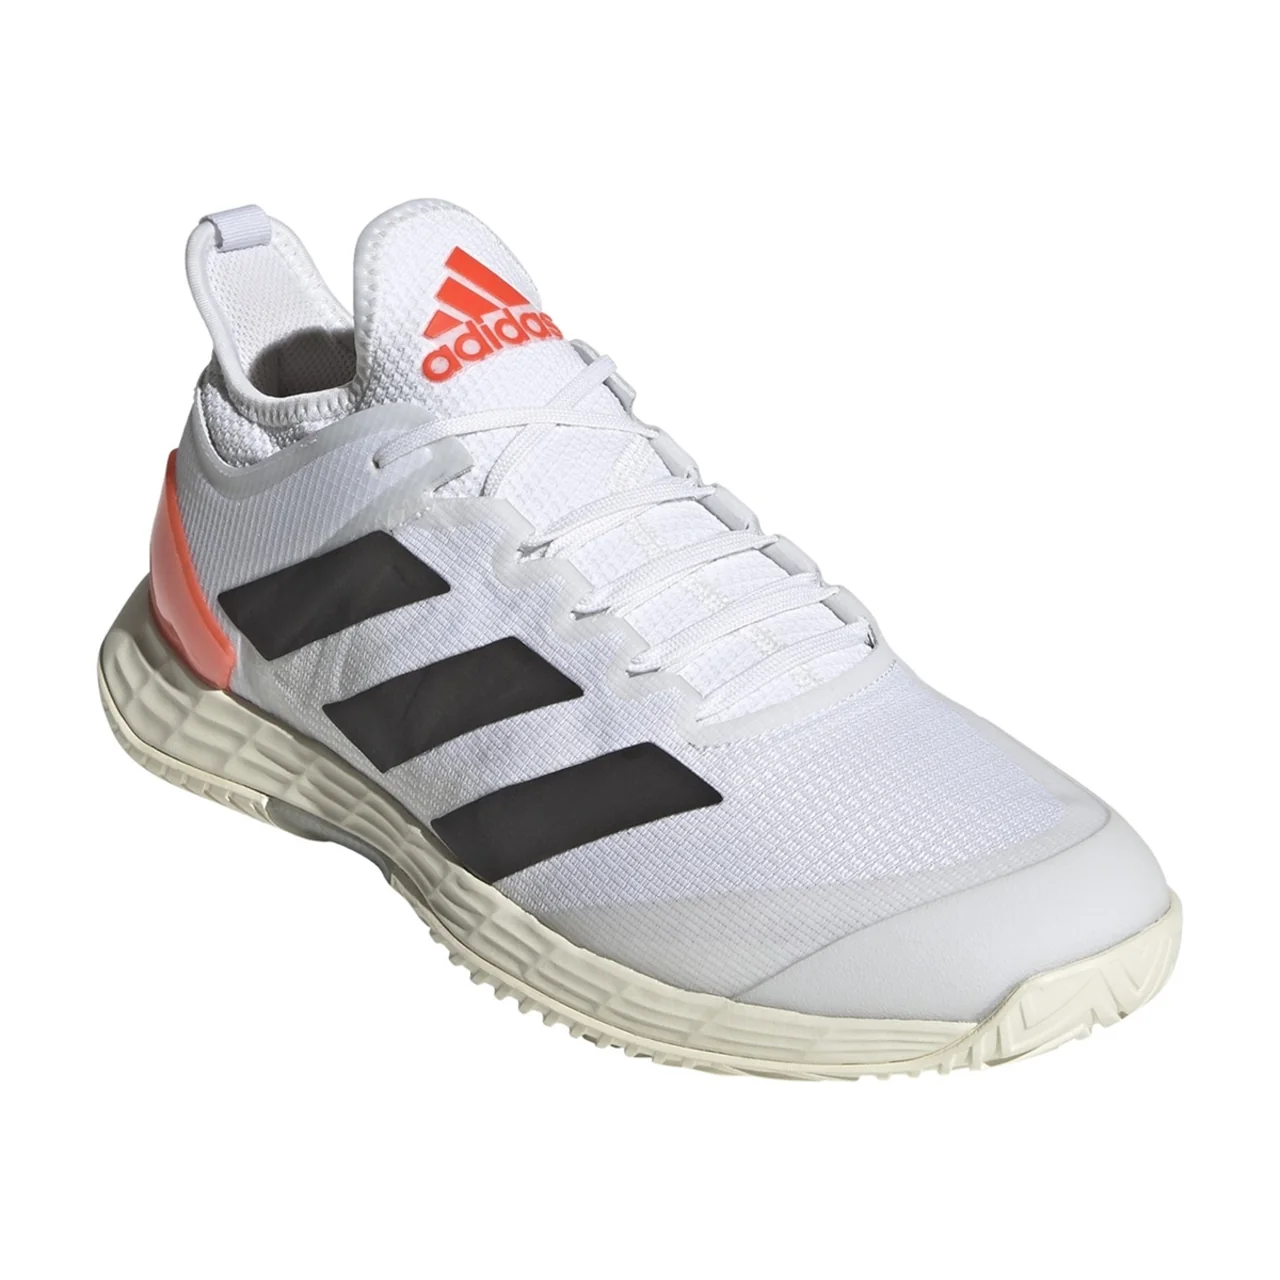 Adidas Adizero Ubersonic 4 M Tennis/ Padel 2021 White/Red